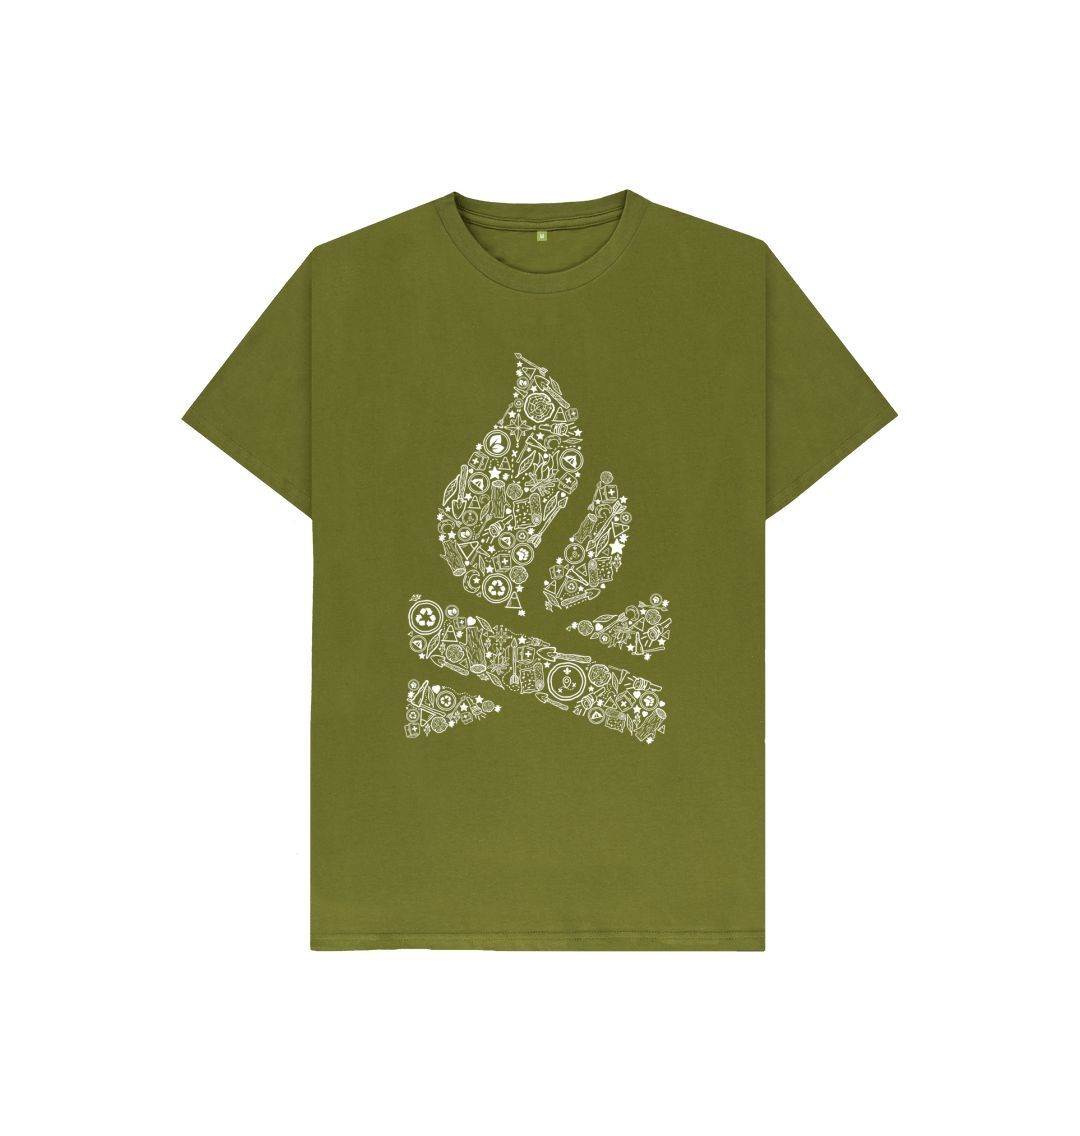 Moss Green P1AN Camp Fire Childrens T-Shirt